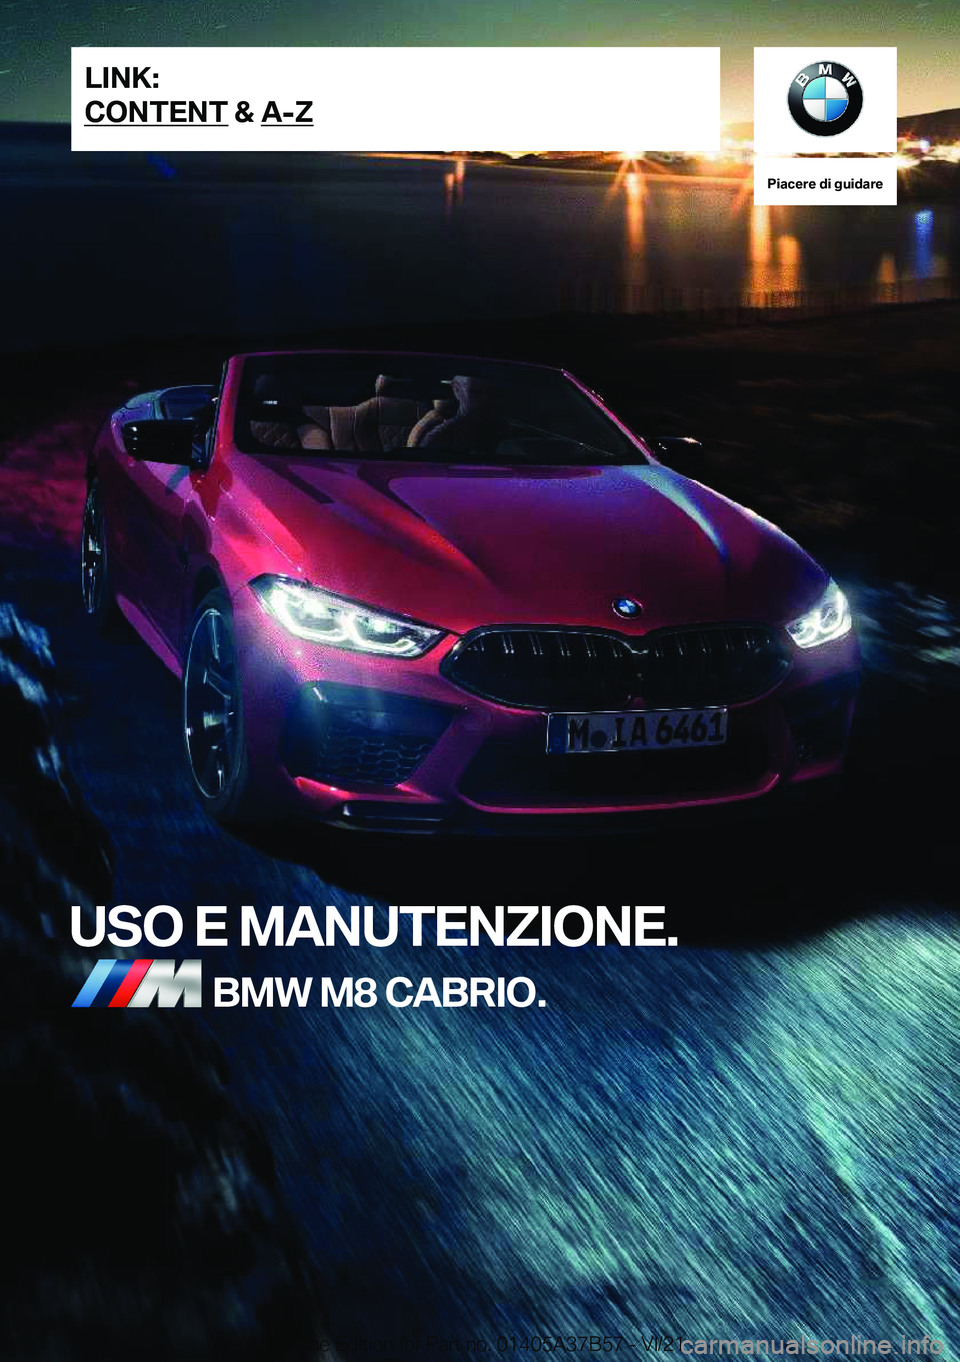 BMW M8 2022  Libretti Di Uso E manutenzione (in Italian) �P�i�a�c�e�r�e��d�i��g�u�i�d�a�r�e
�U�S�O��E��M�A�N�U�T�E�N�Z�I�O�N�E�.�B�M�W��M�8��C�A�B�R�I�O�.�L�I�N�K�:
�C�O�N�T�E�N�T��&��A�-�Z�O�n�l�i�n�e��E�d�i�t�i�o�n��f�o�r��P�a�r�t��n�o�.��0�1